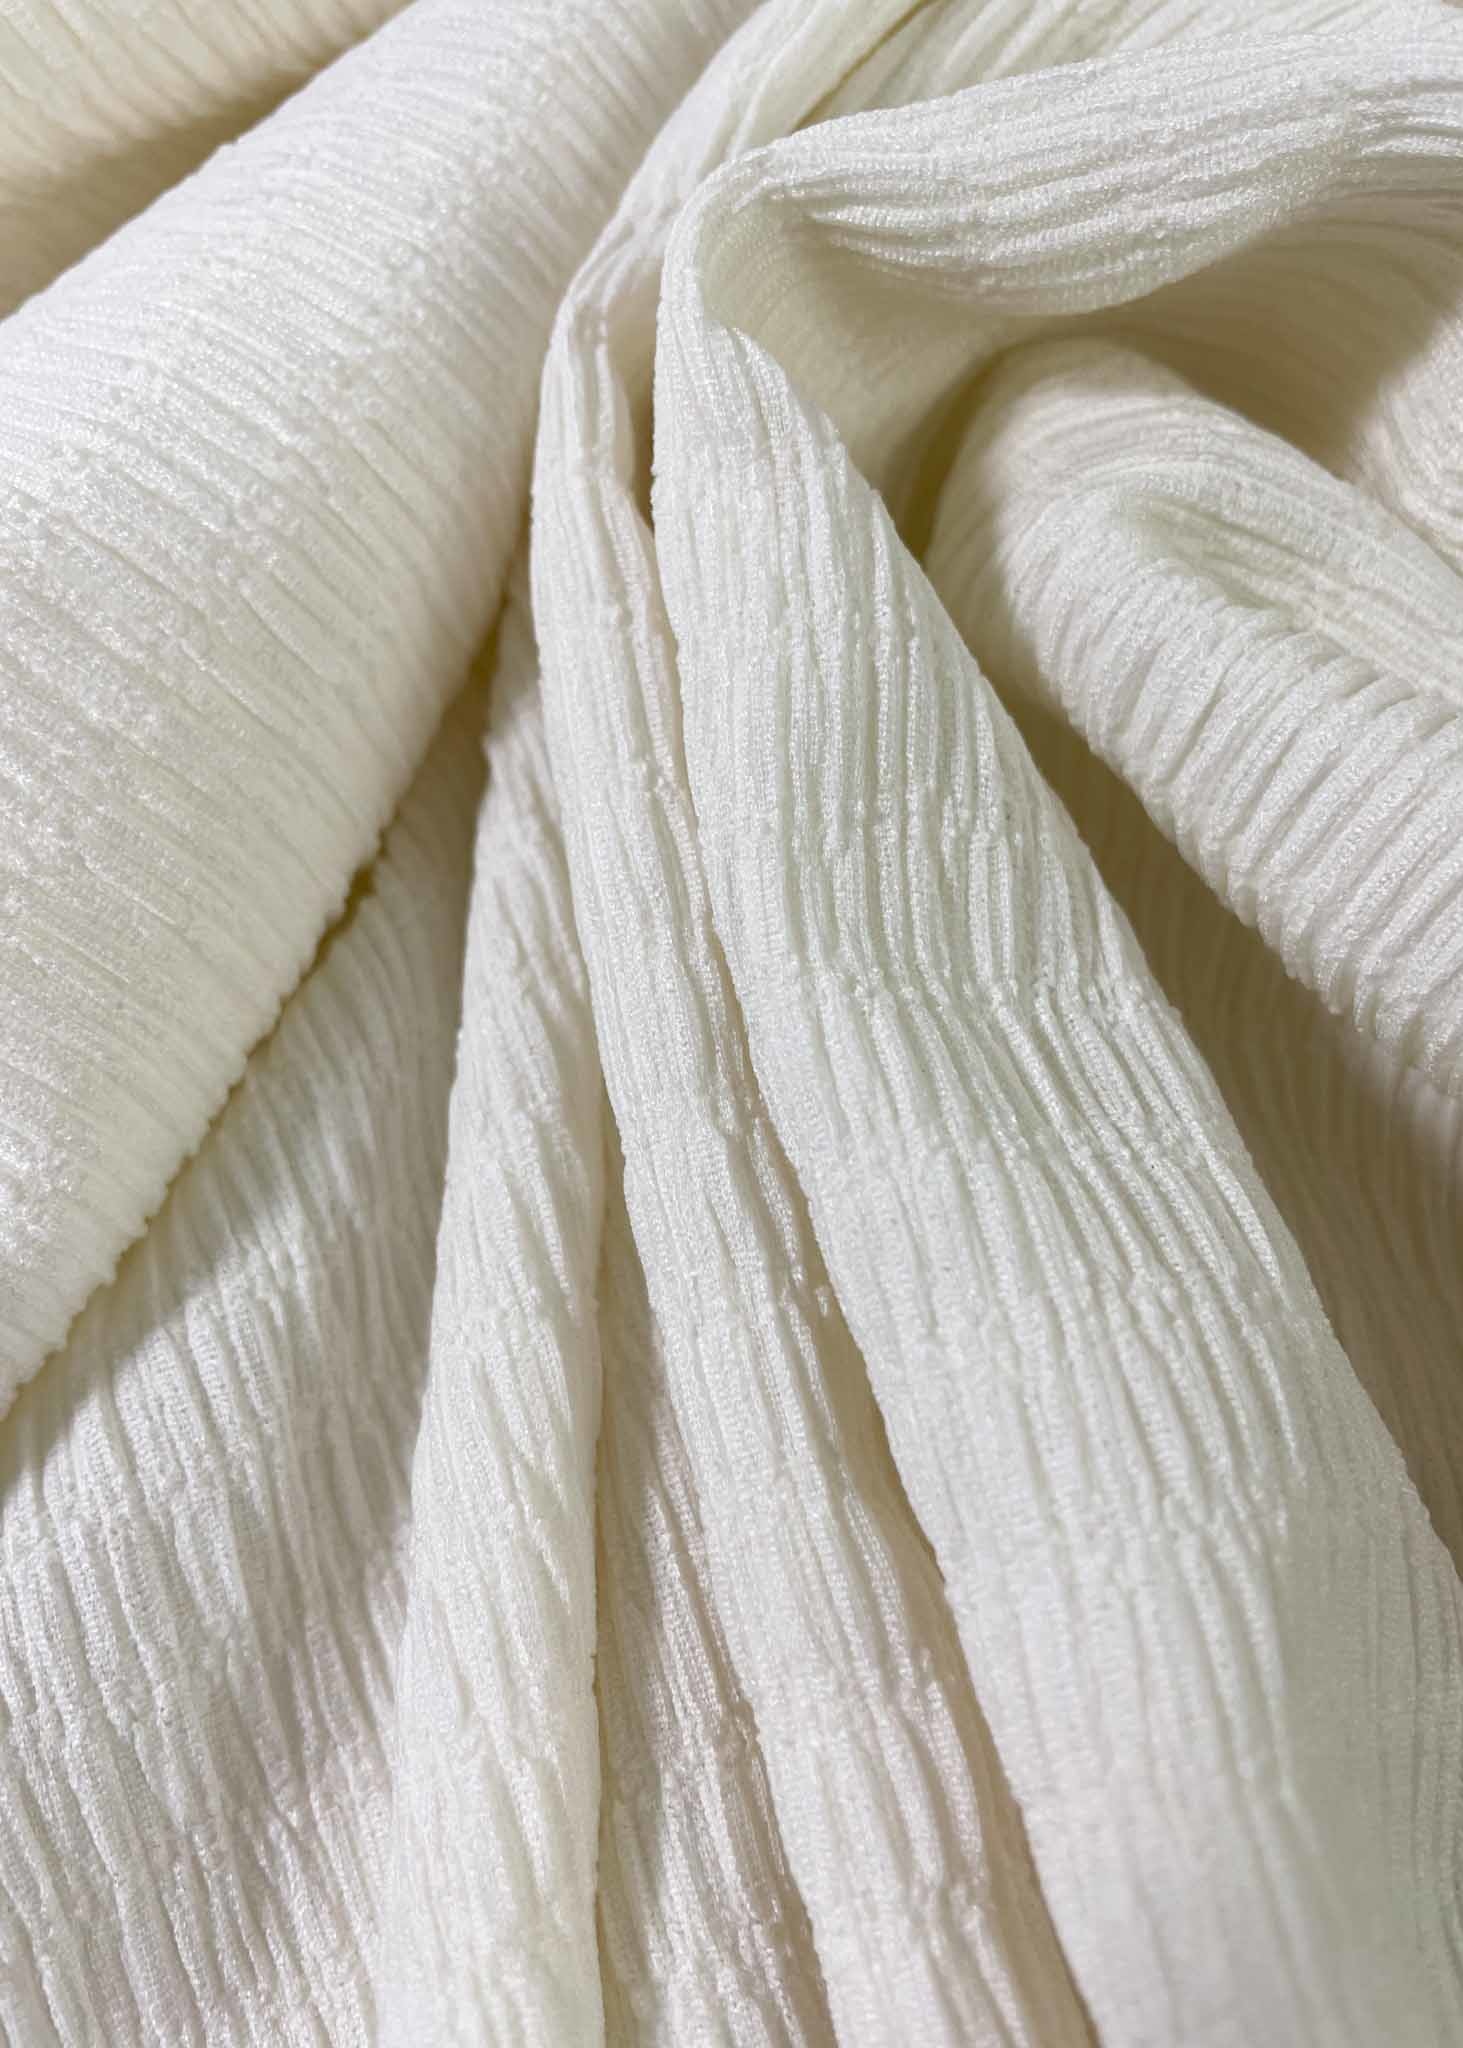 Erfenis twaalf Waarnemen gesmokte jersey - prachtige rekbare stof - gebroken wit - Madeline de  stoffenmadam